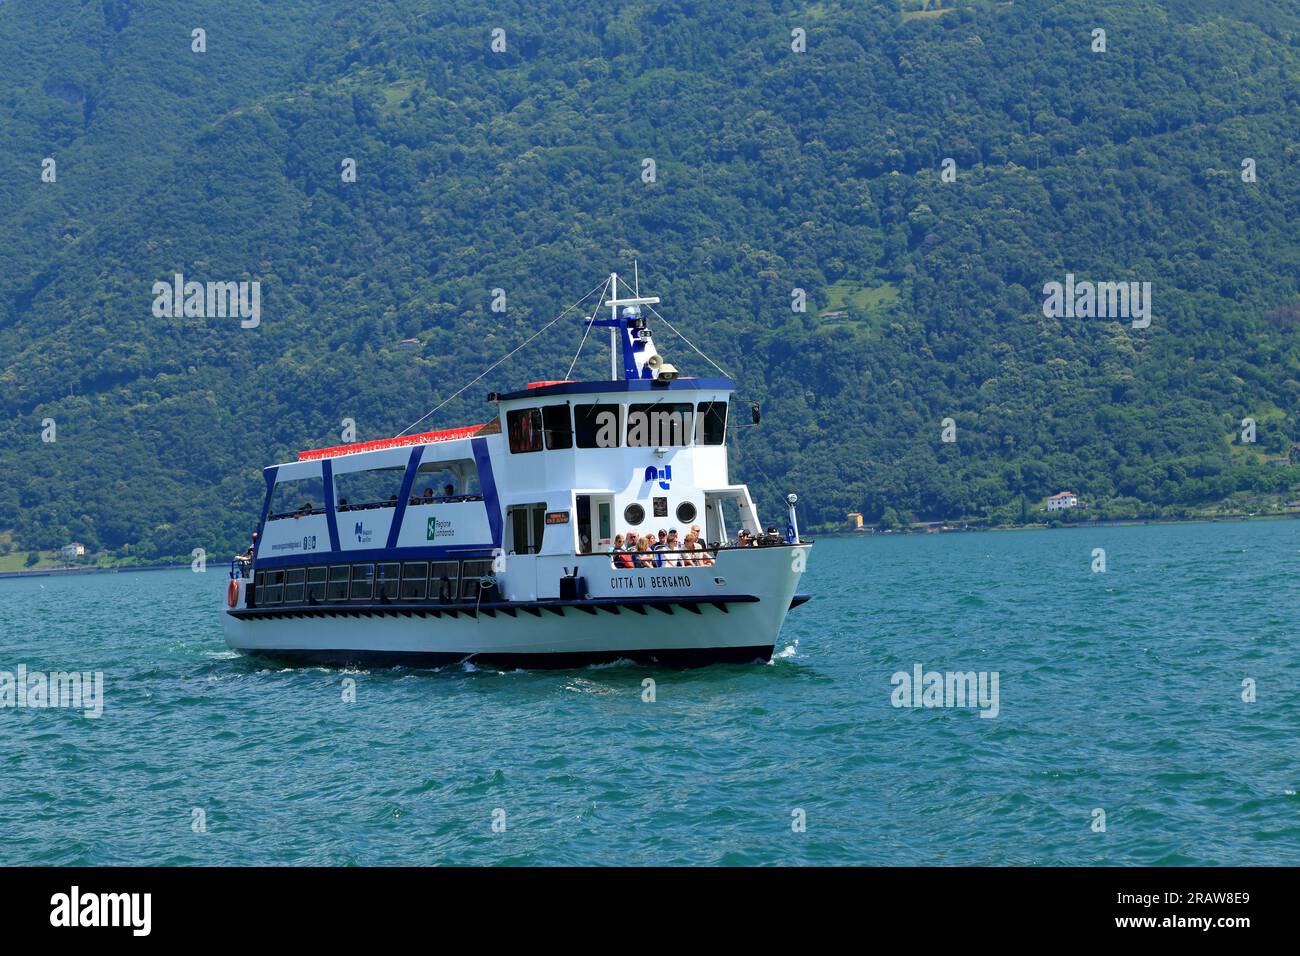 Barco ferry Città di Bergamo. Lago Iseo, Lago d'Iseo, Iseosee, Italia Foto de stock